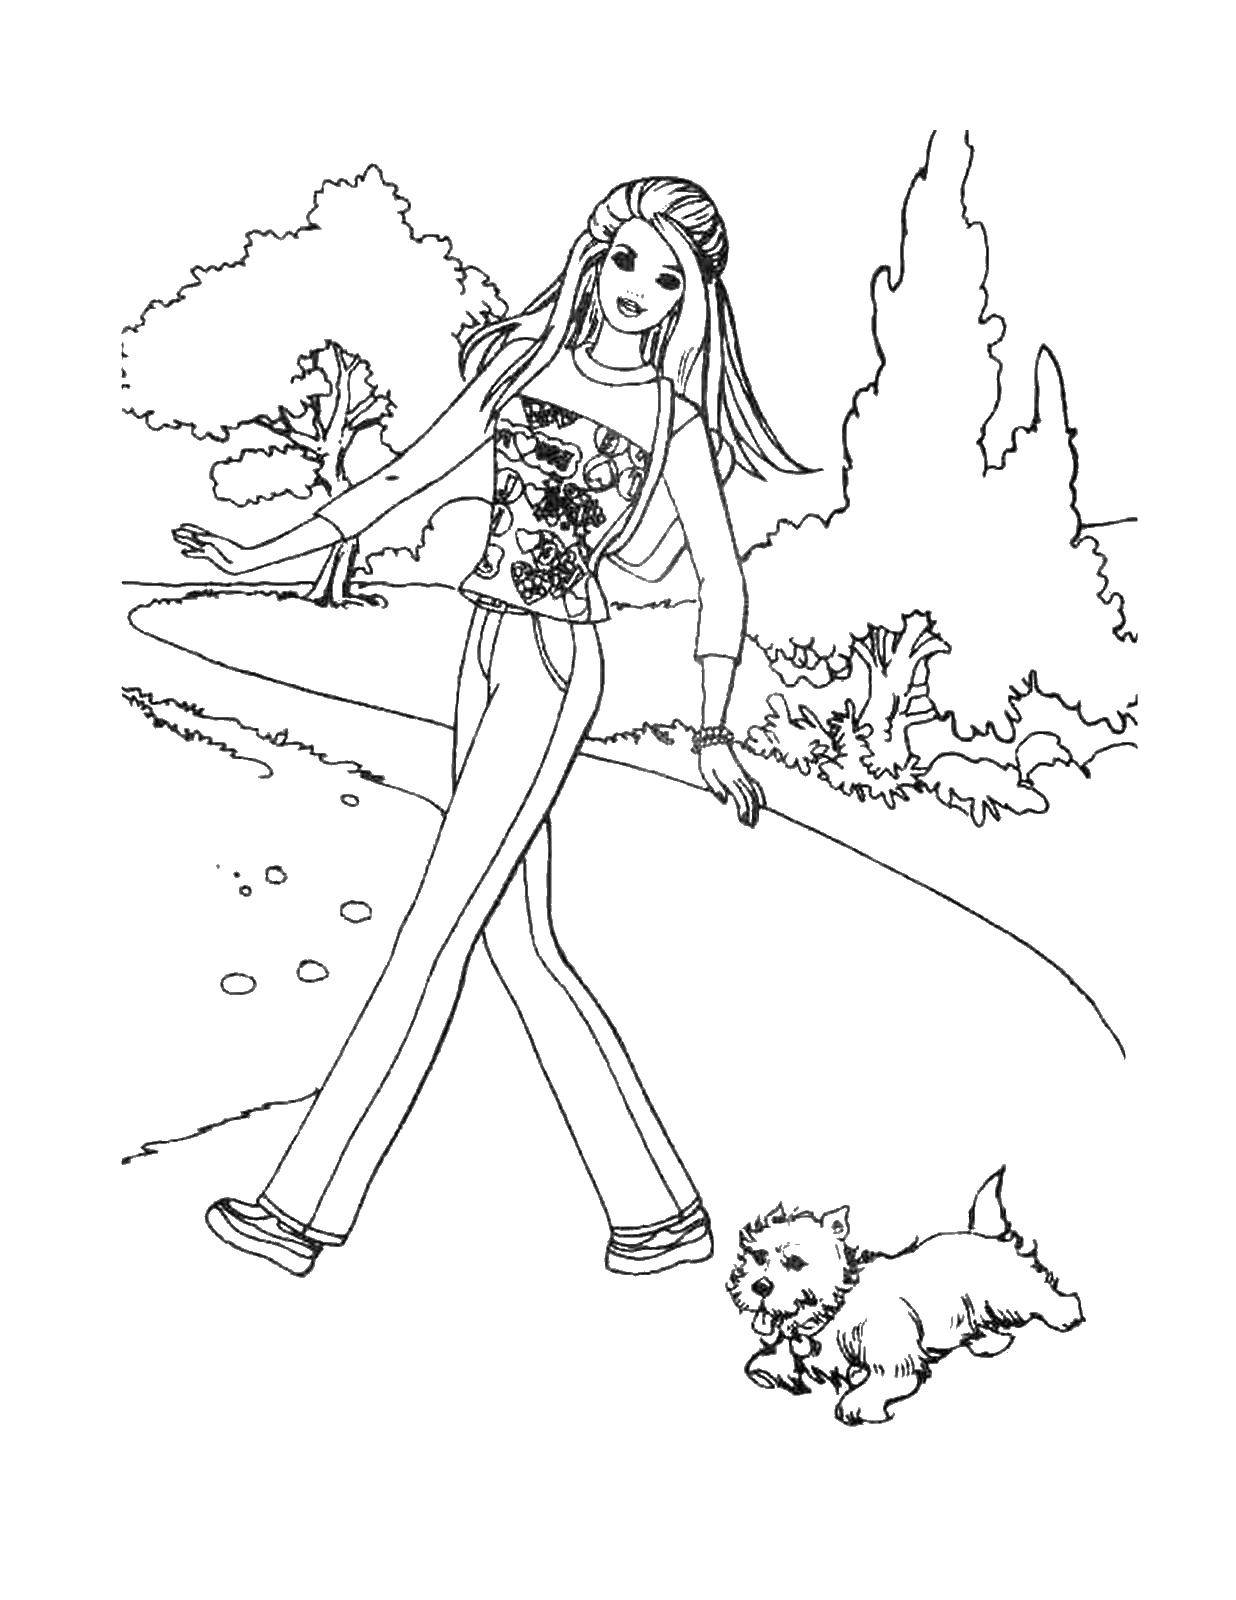   Барби на прогулке с щенком